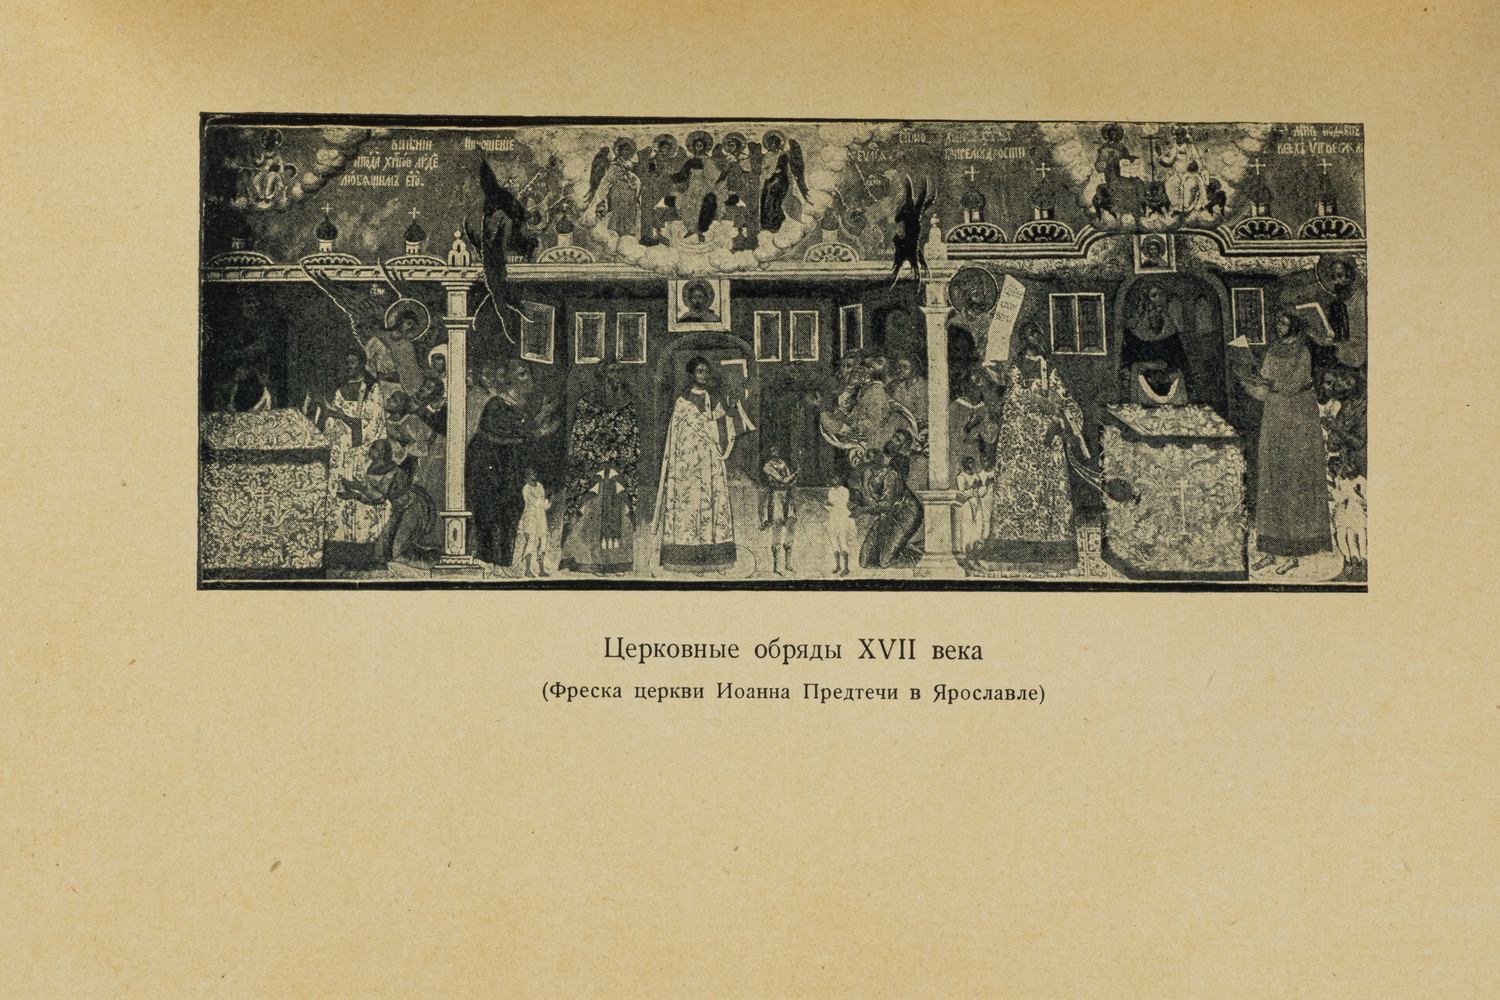 Житие протопопа Аввакума им самим написанное и другие его сочинения (М.-Л., 1934).